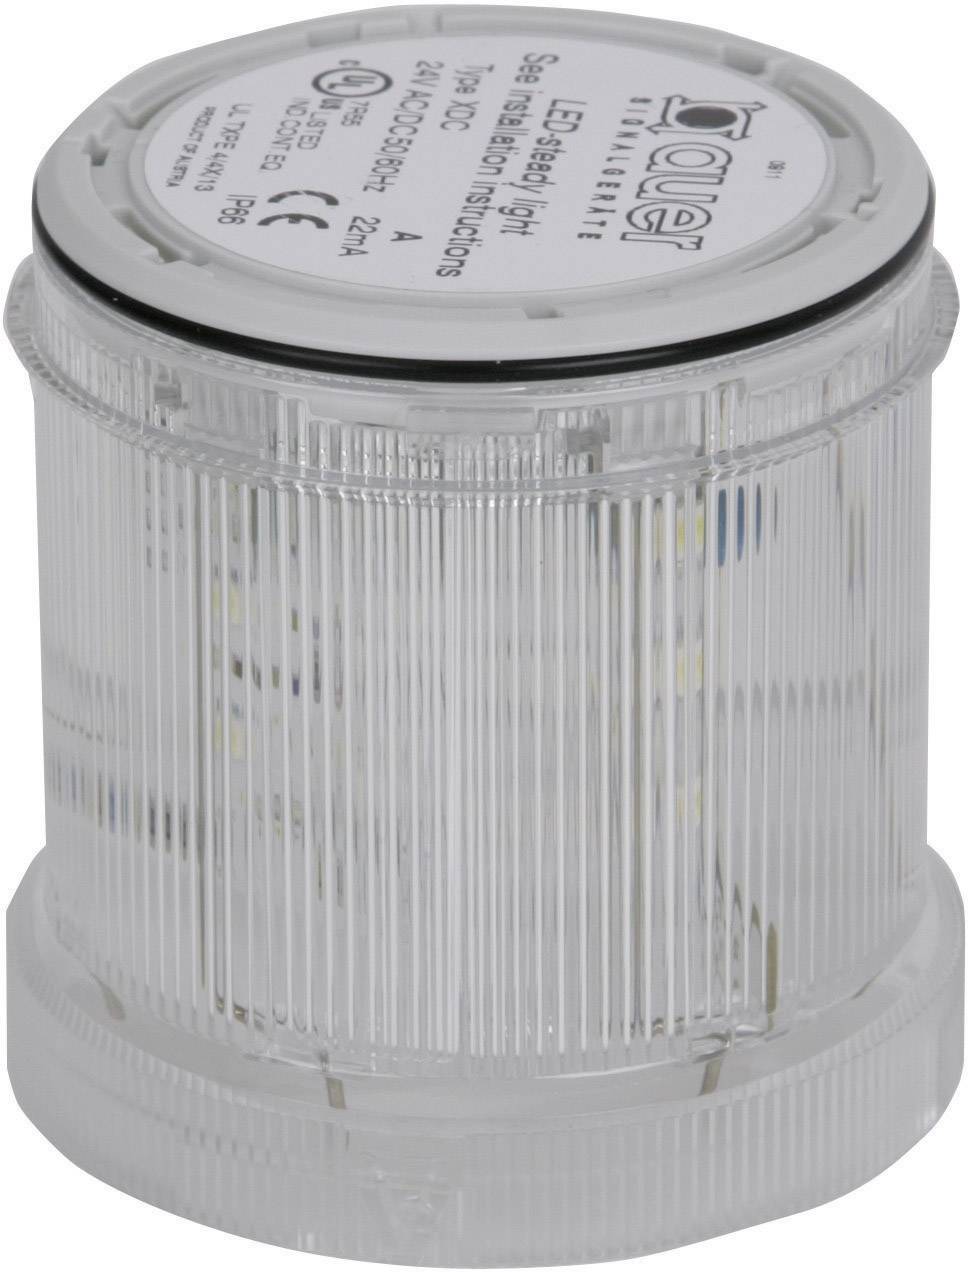 AUER SIGNAL Signalsäulenelement Auer Signalgeräte XDC-HP Weiß Dauerlicht 24 V/DC, 24 V/AC